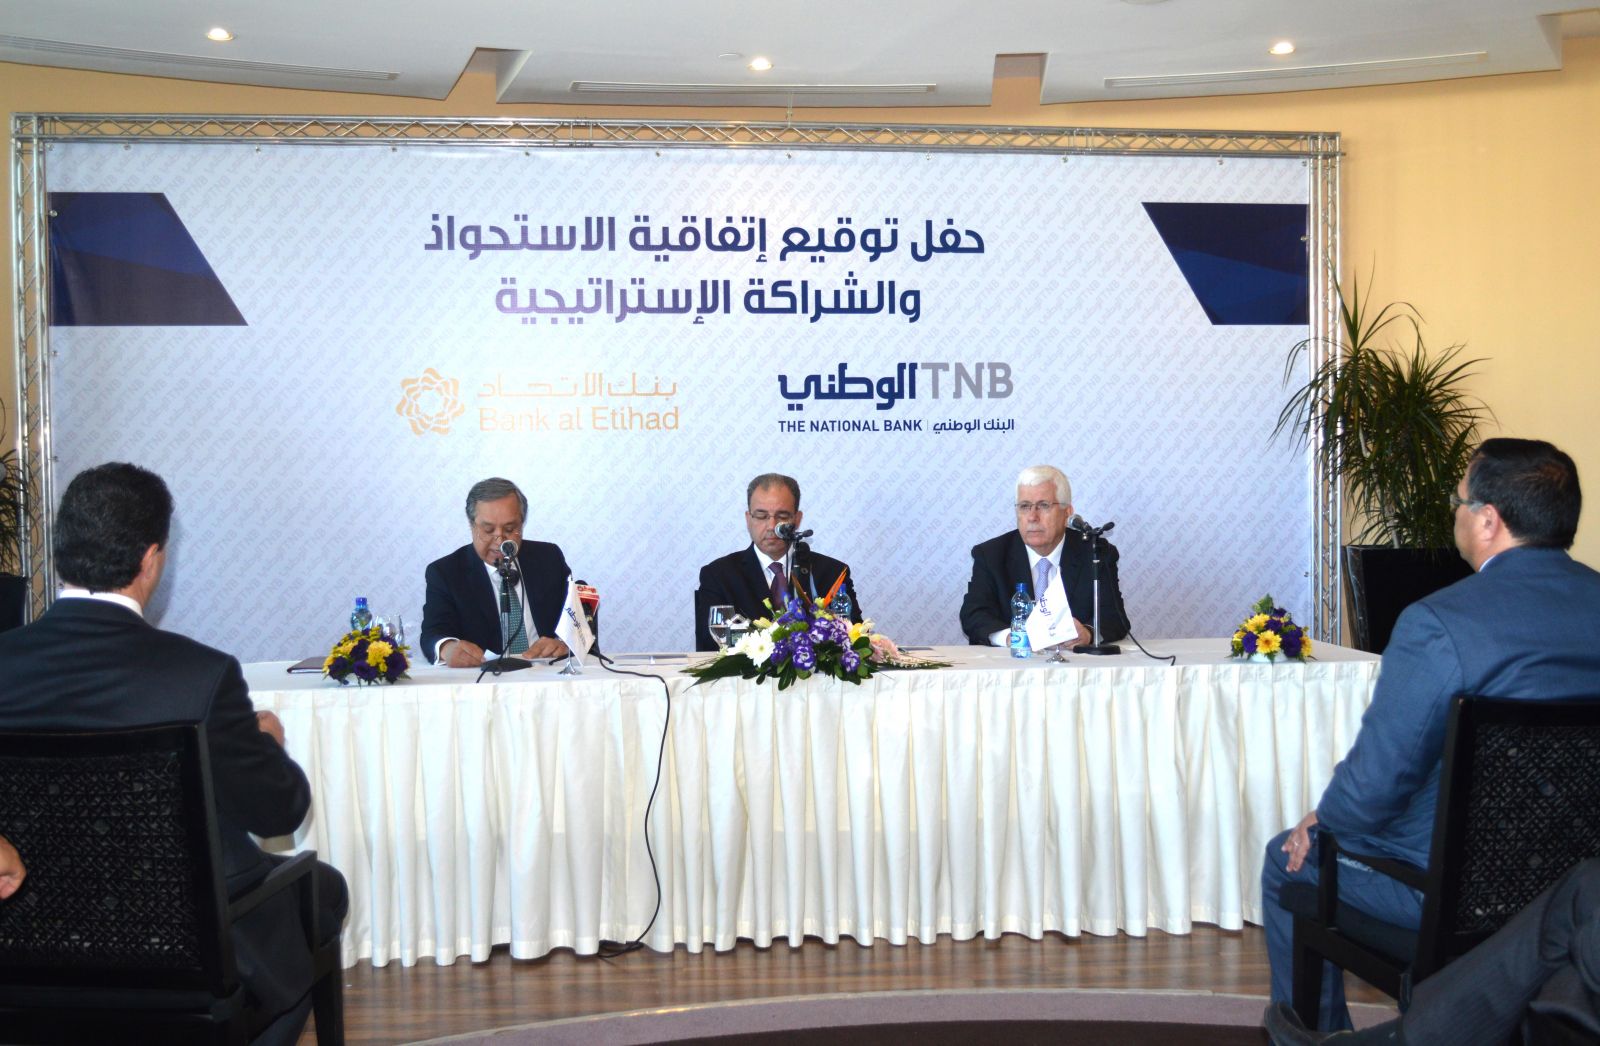 توقيع اتفاقية شراكه استراتيجية بين البنك الوطني وبنك الاتحاد الأردني تتضمن ضم اصول والتزامات بنك الاتحاد في فلسطين 